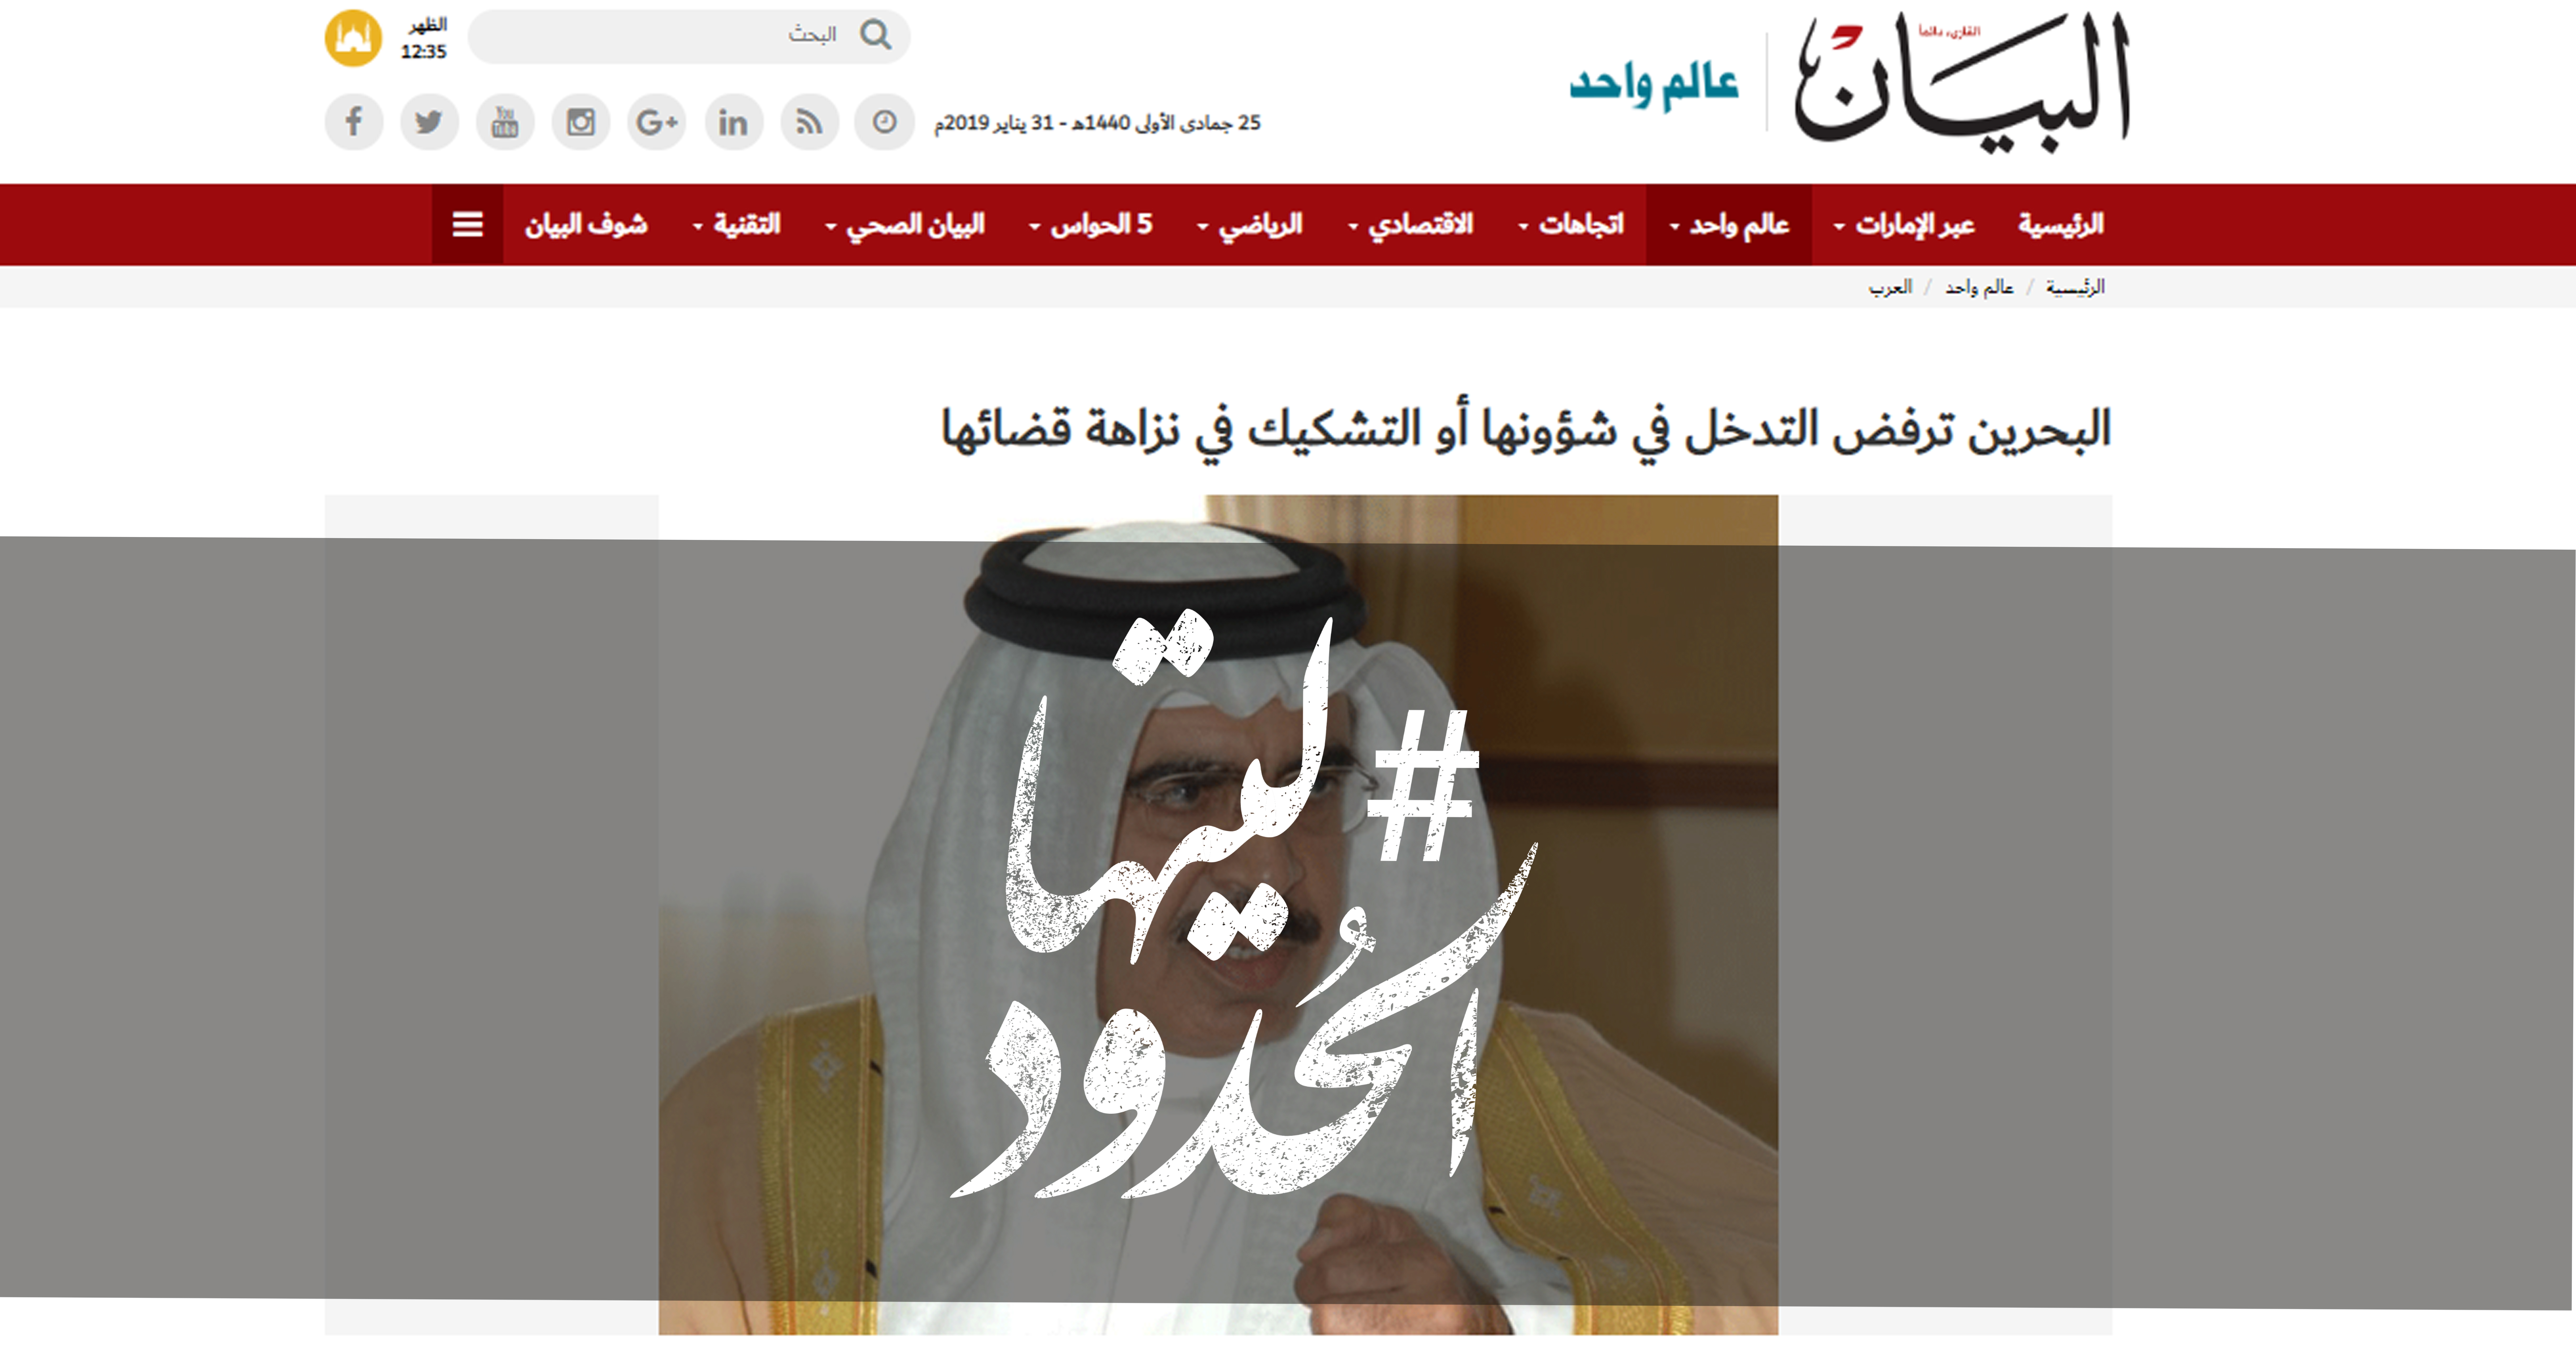 صورة البحرين ترفض التدخل في شؤونها أو التشكيك في نزاهة قضائها